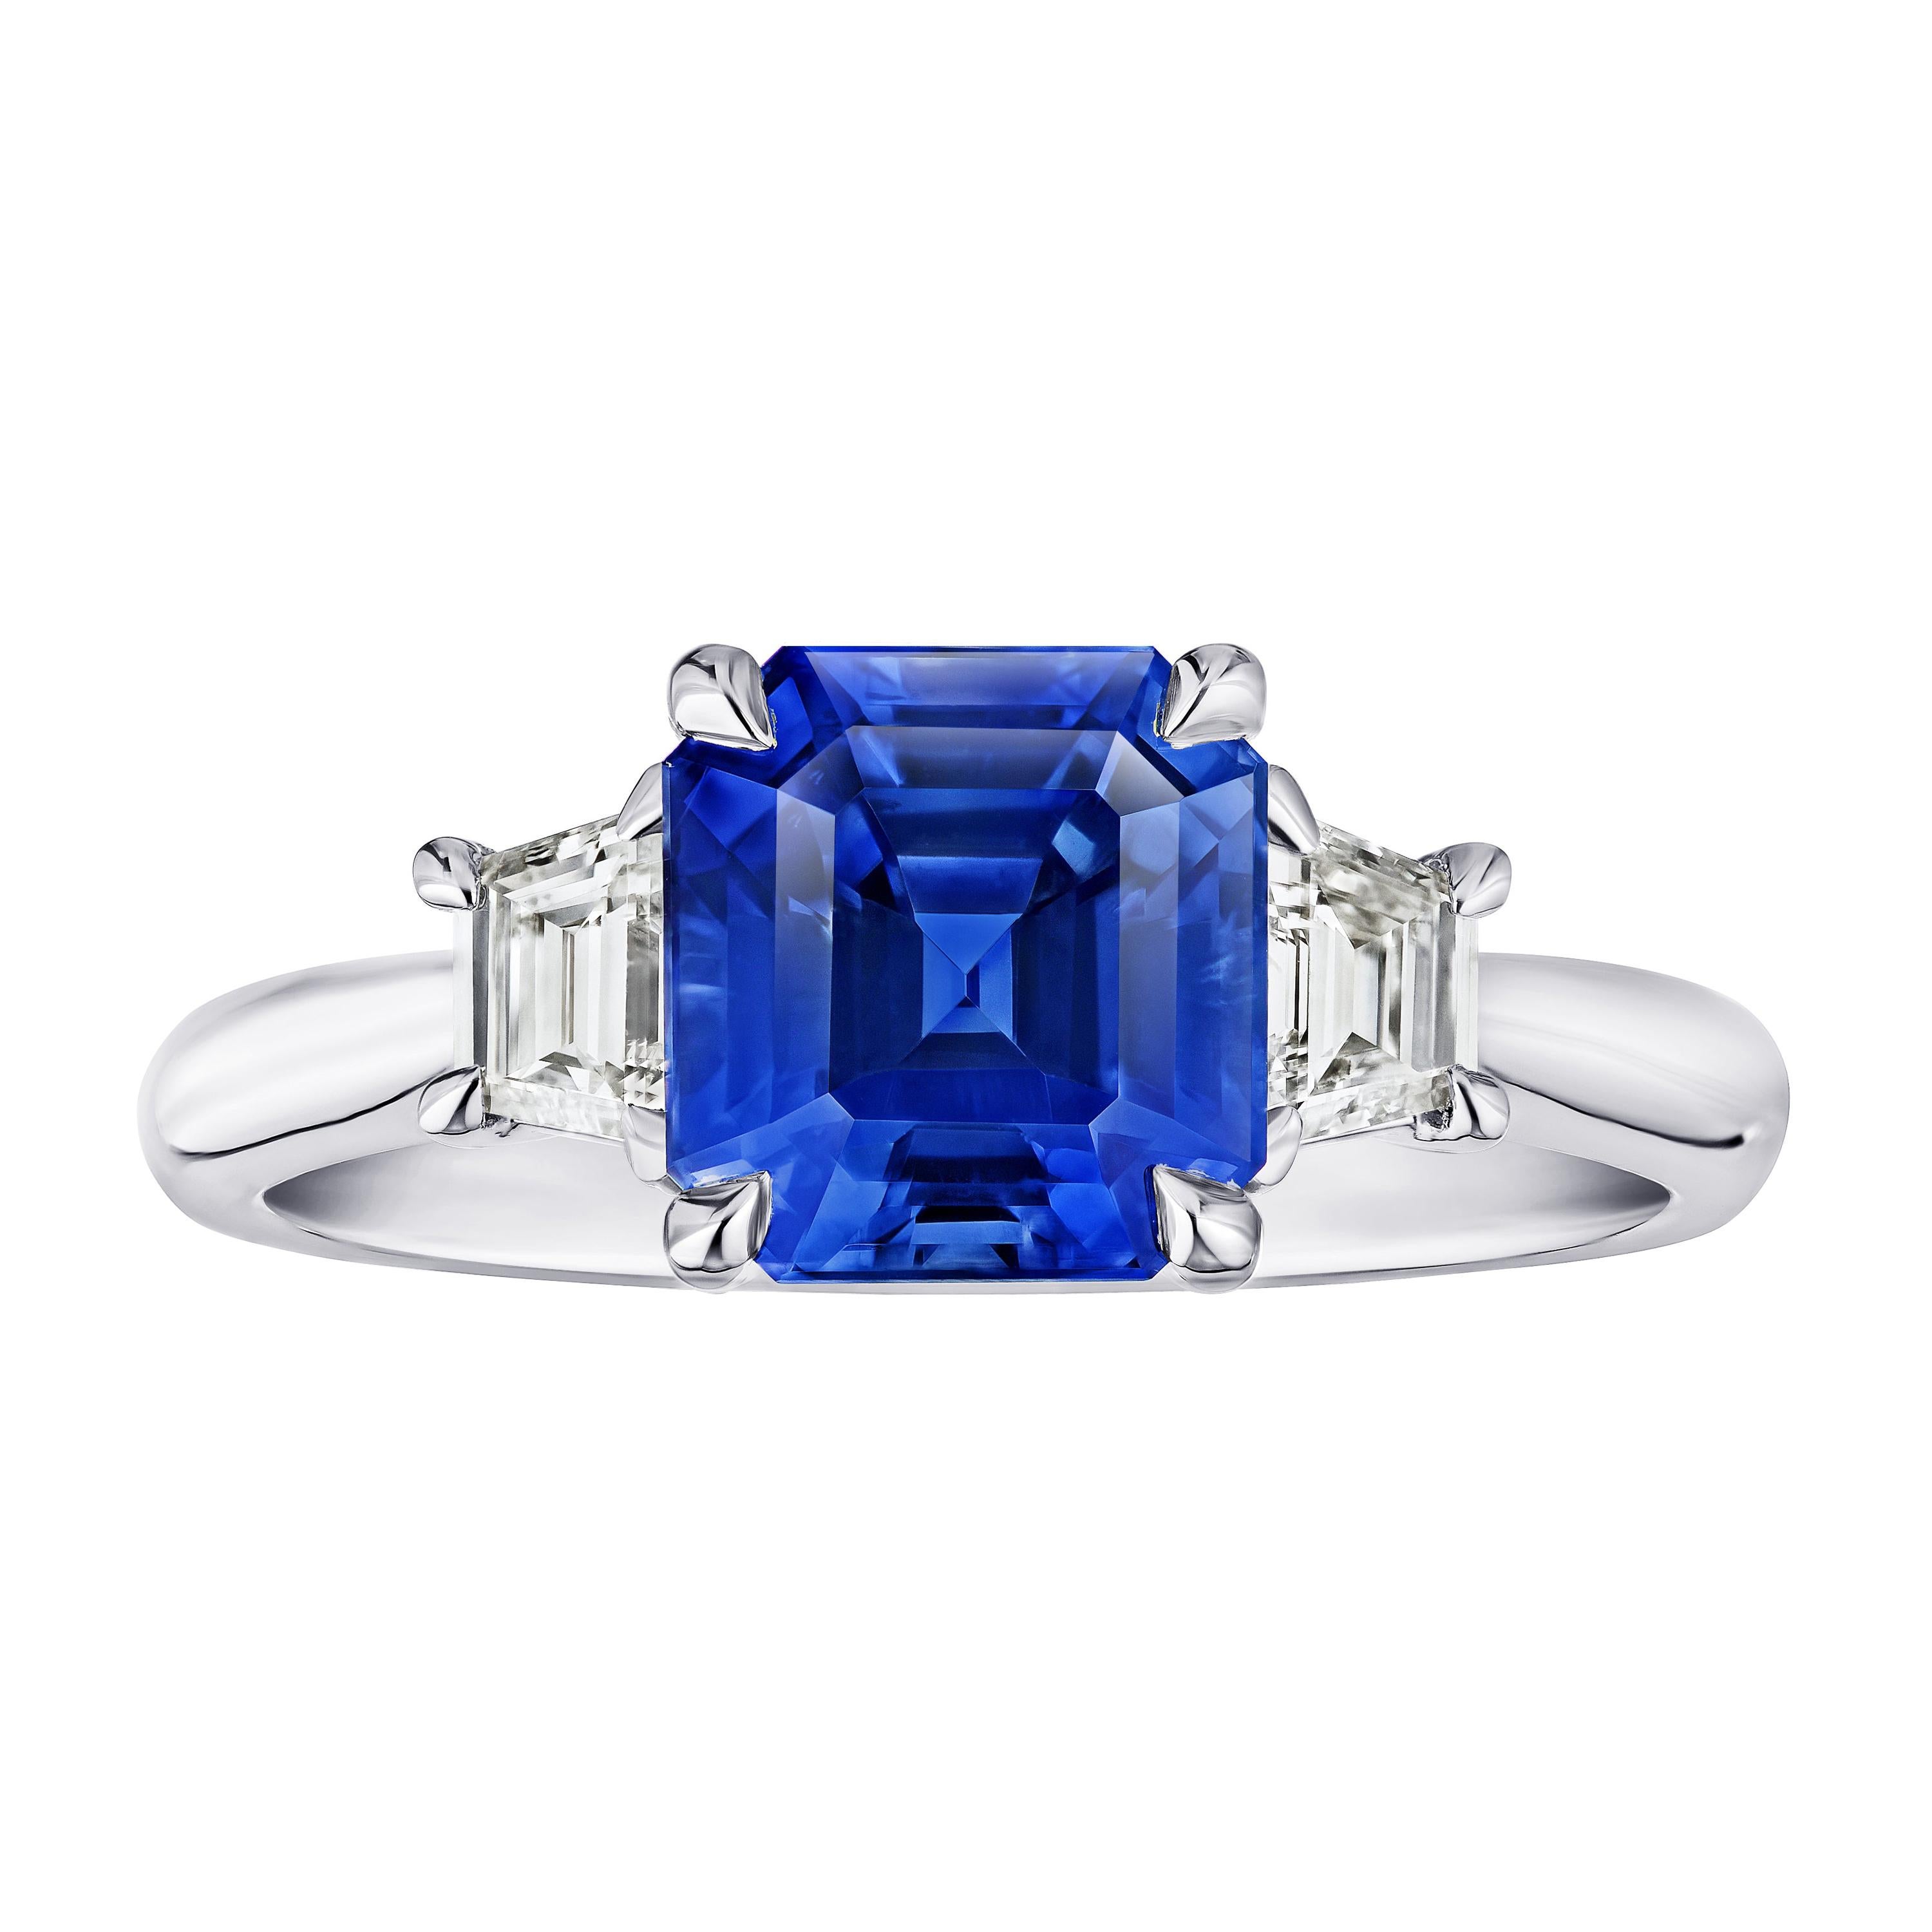 Bague en saphir bleu taille émeraude de 3.18 carats et diamants